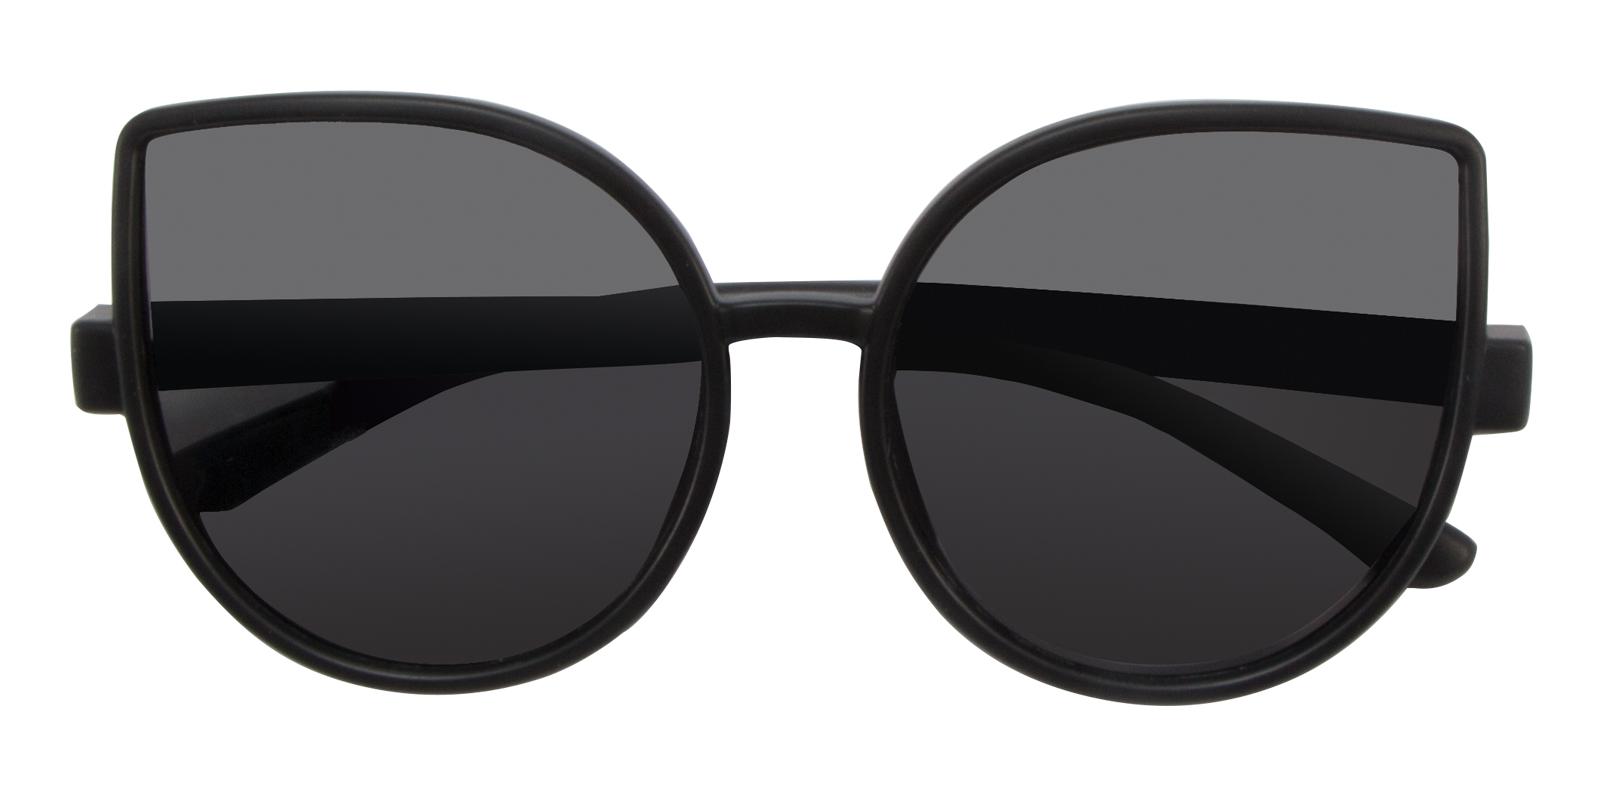 Nereid Black TR Sunglasses Frames from ABBE Glasses